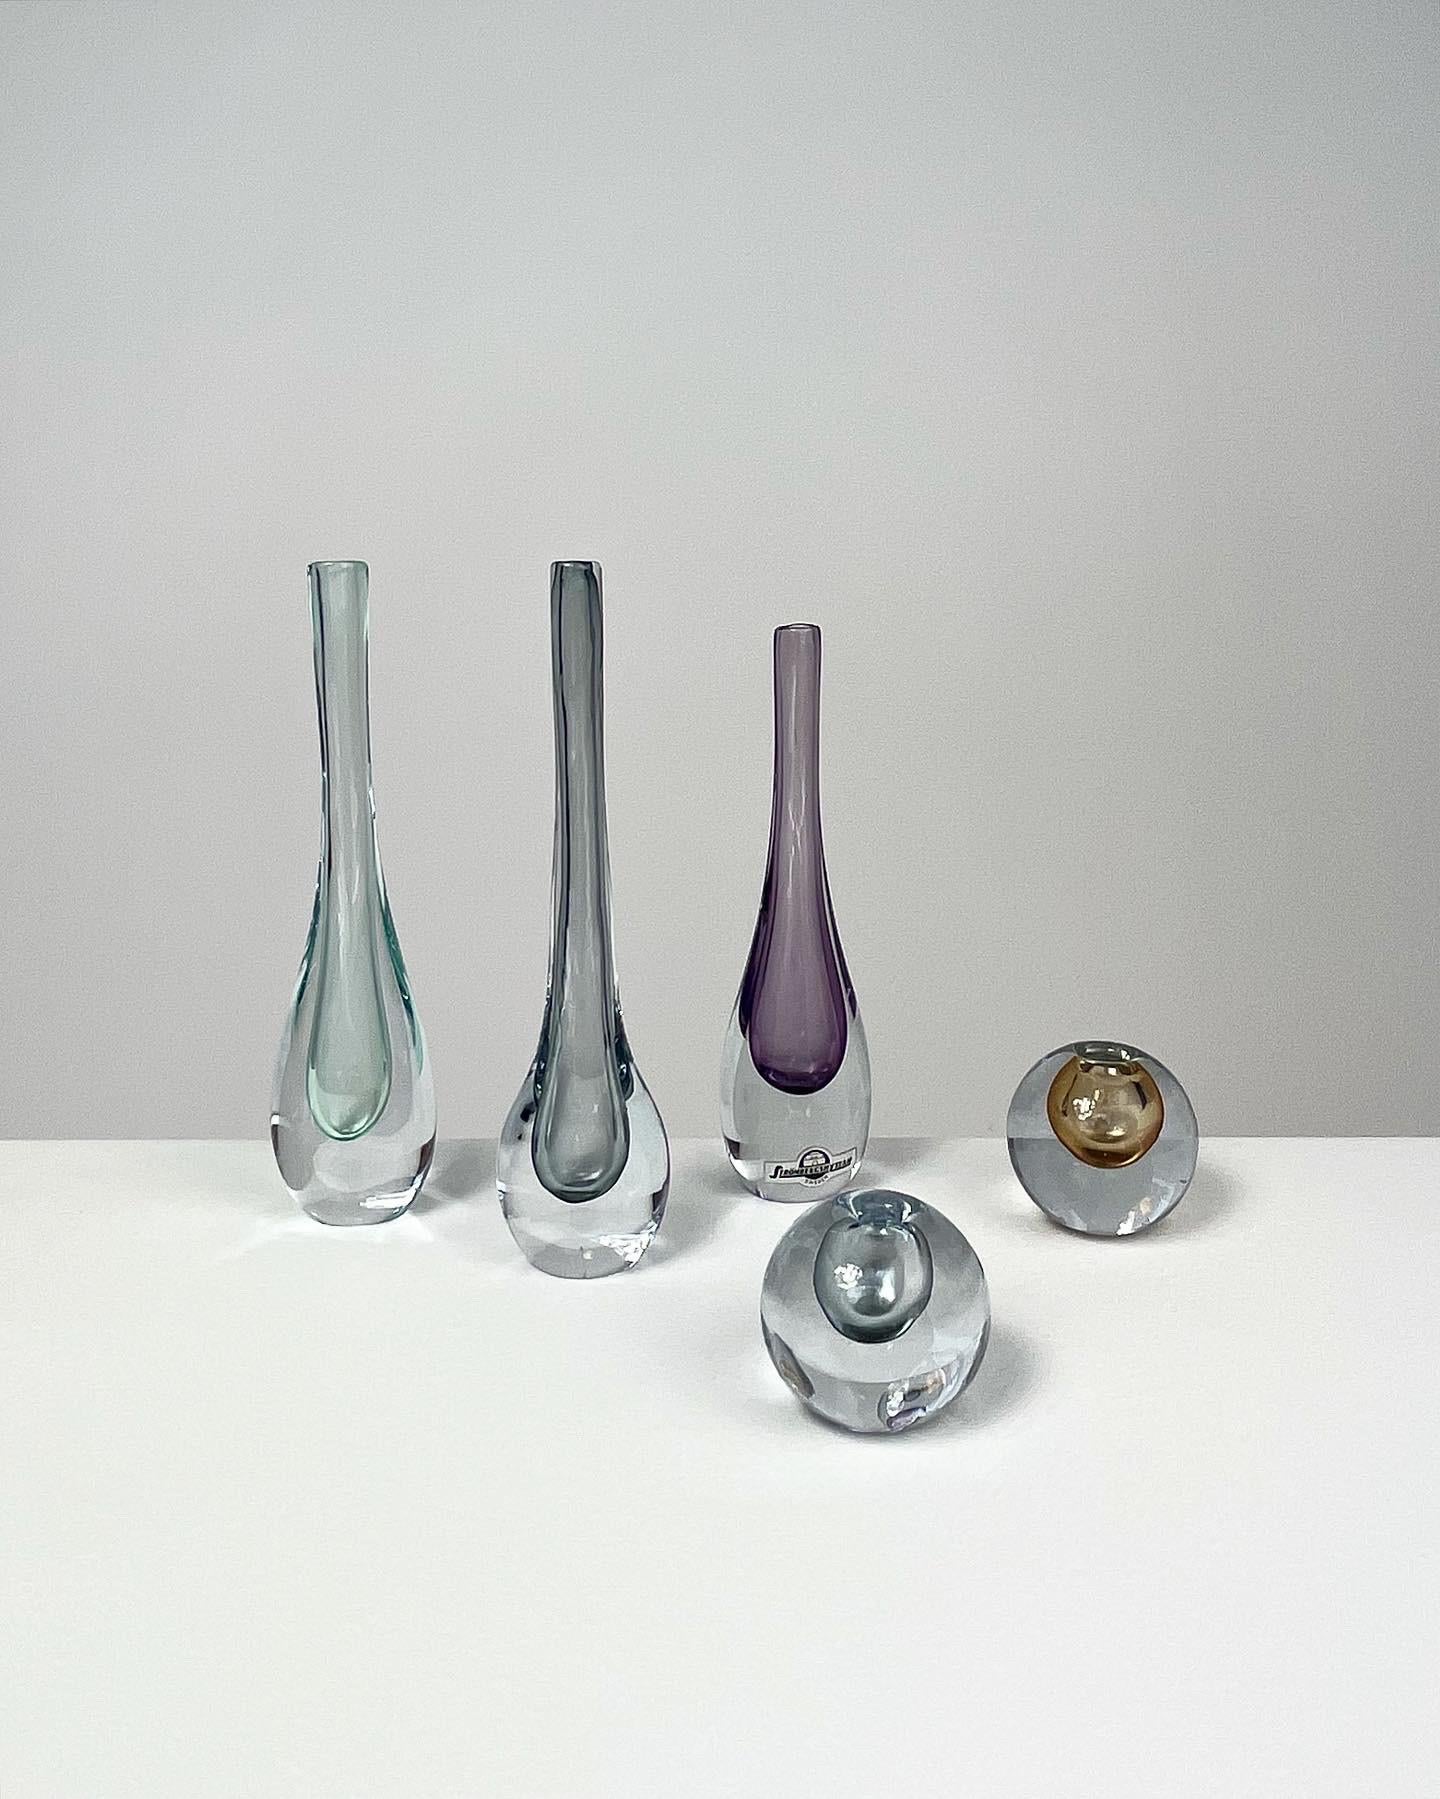 Ensemble de cinq vases miniatures réalisés par Asta Strömberg et Gunnar Nylund pour la verrerie de Strömbergshyttan à la fin des années 1950 et au début des années 1960.

Hauteur : 3,5 cm, 4 cm, 13,5 cm, 14,2 cm, 14,5 cm

Le vase boule ambre est